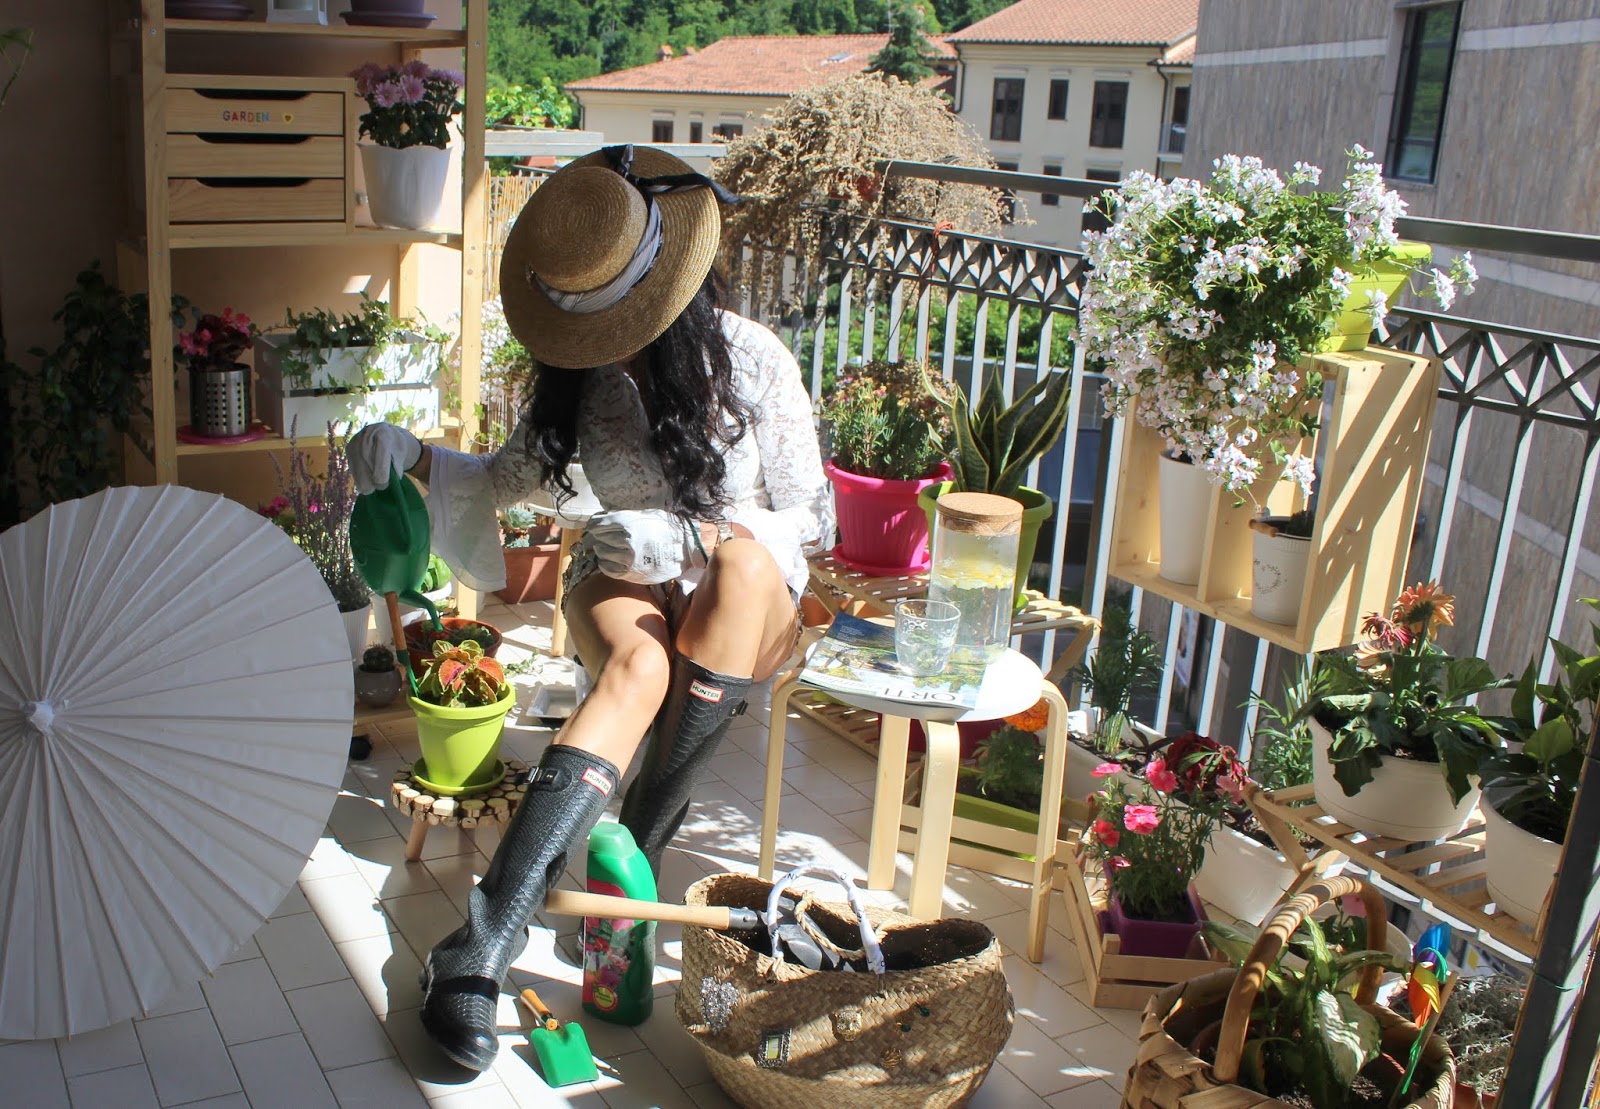 Urban Gardening But Make It Chic